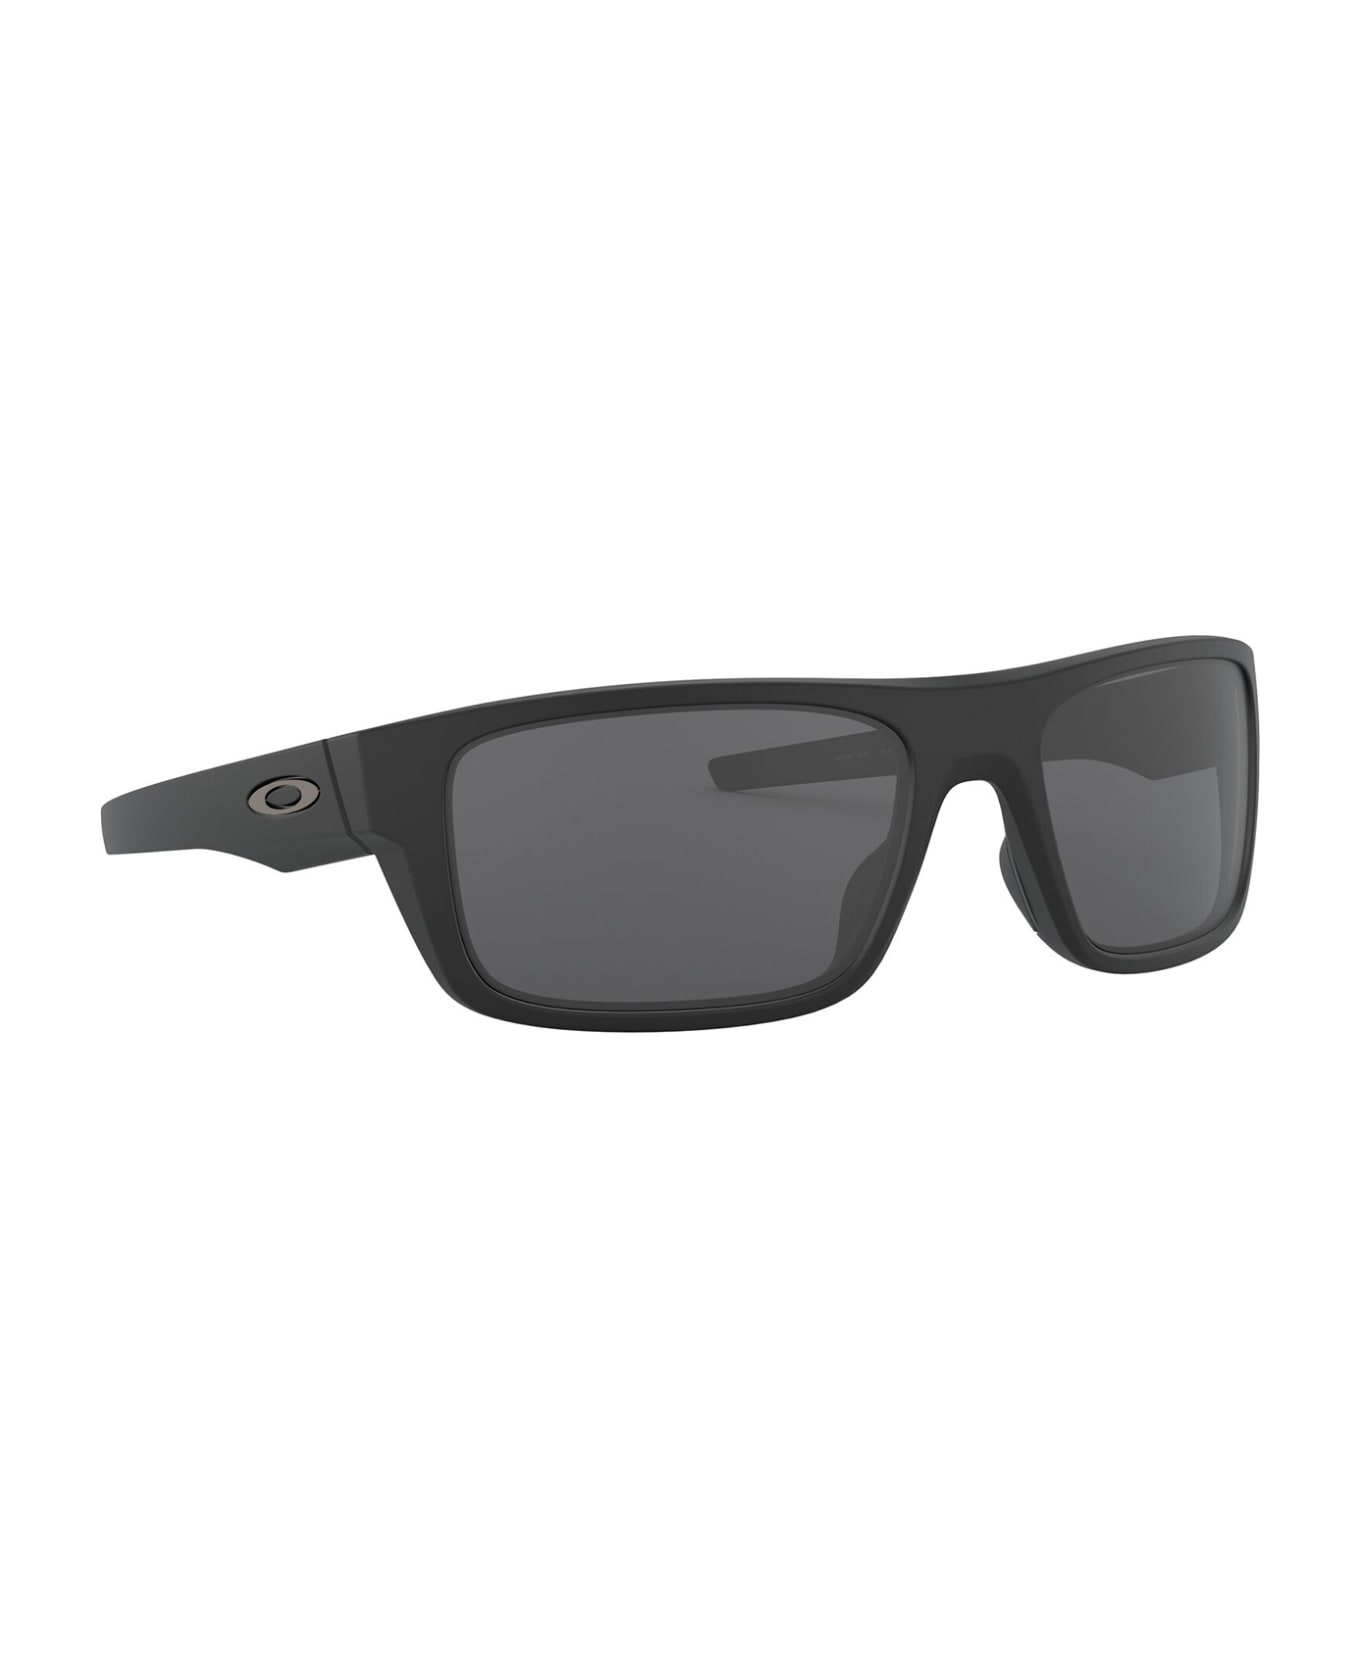 Oakley Oo9367 Matte Black Sunglasses - Matte Black サングラス